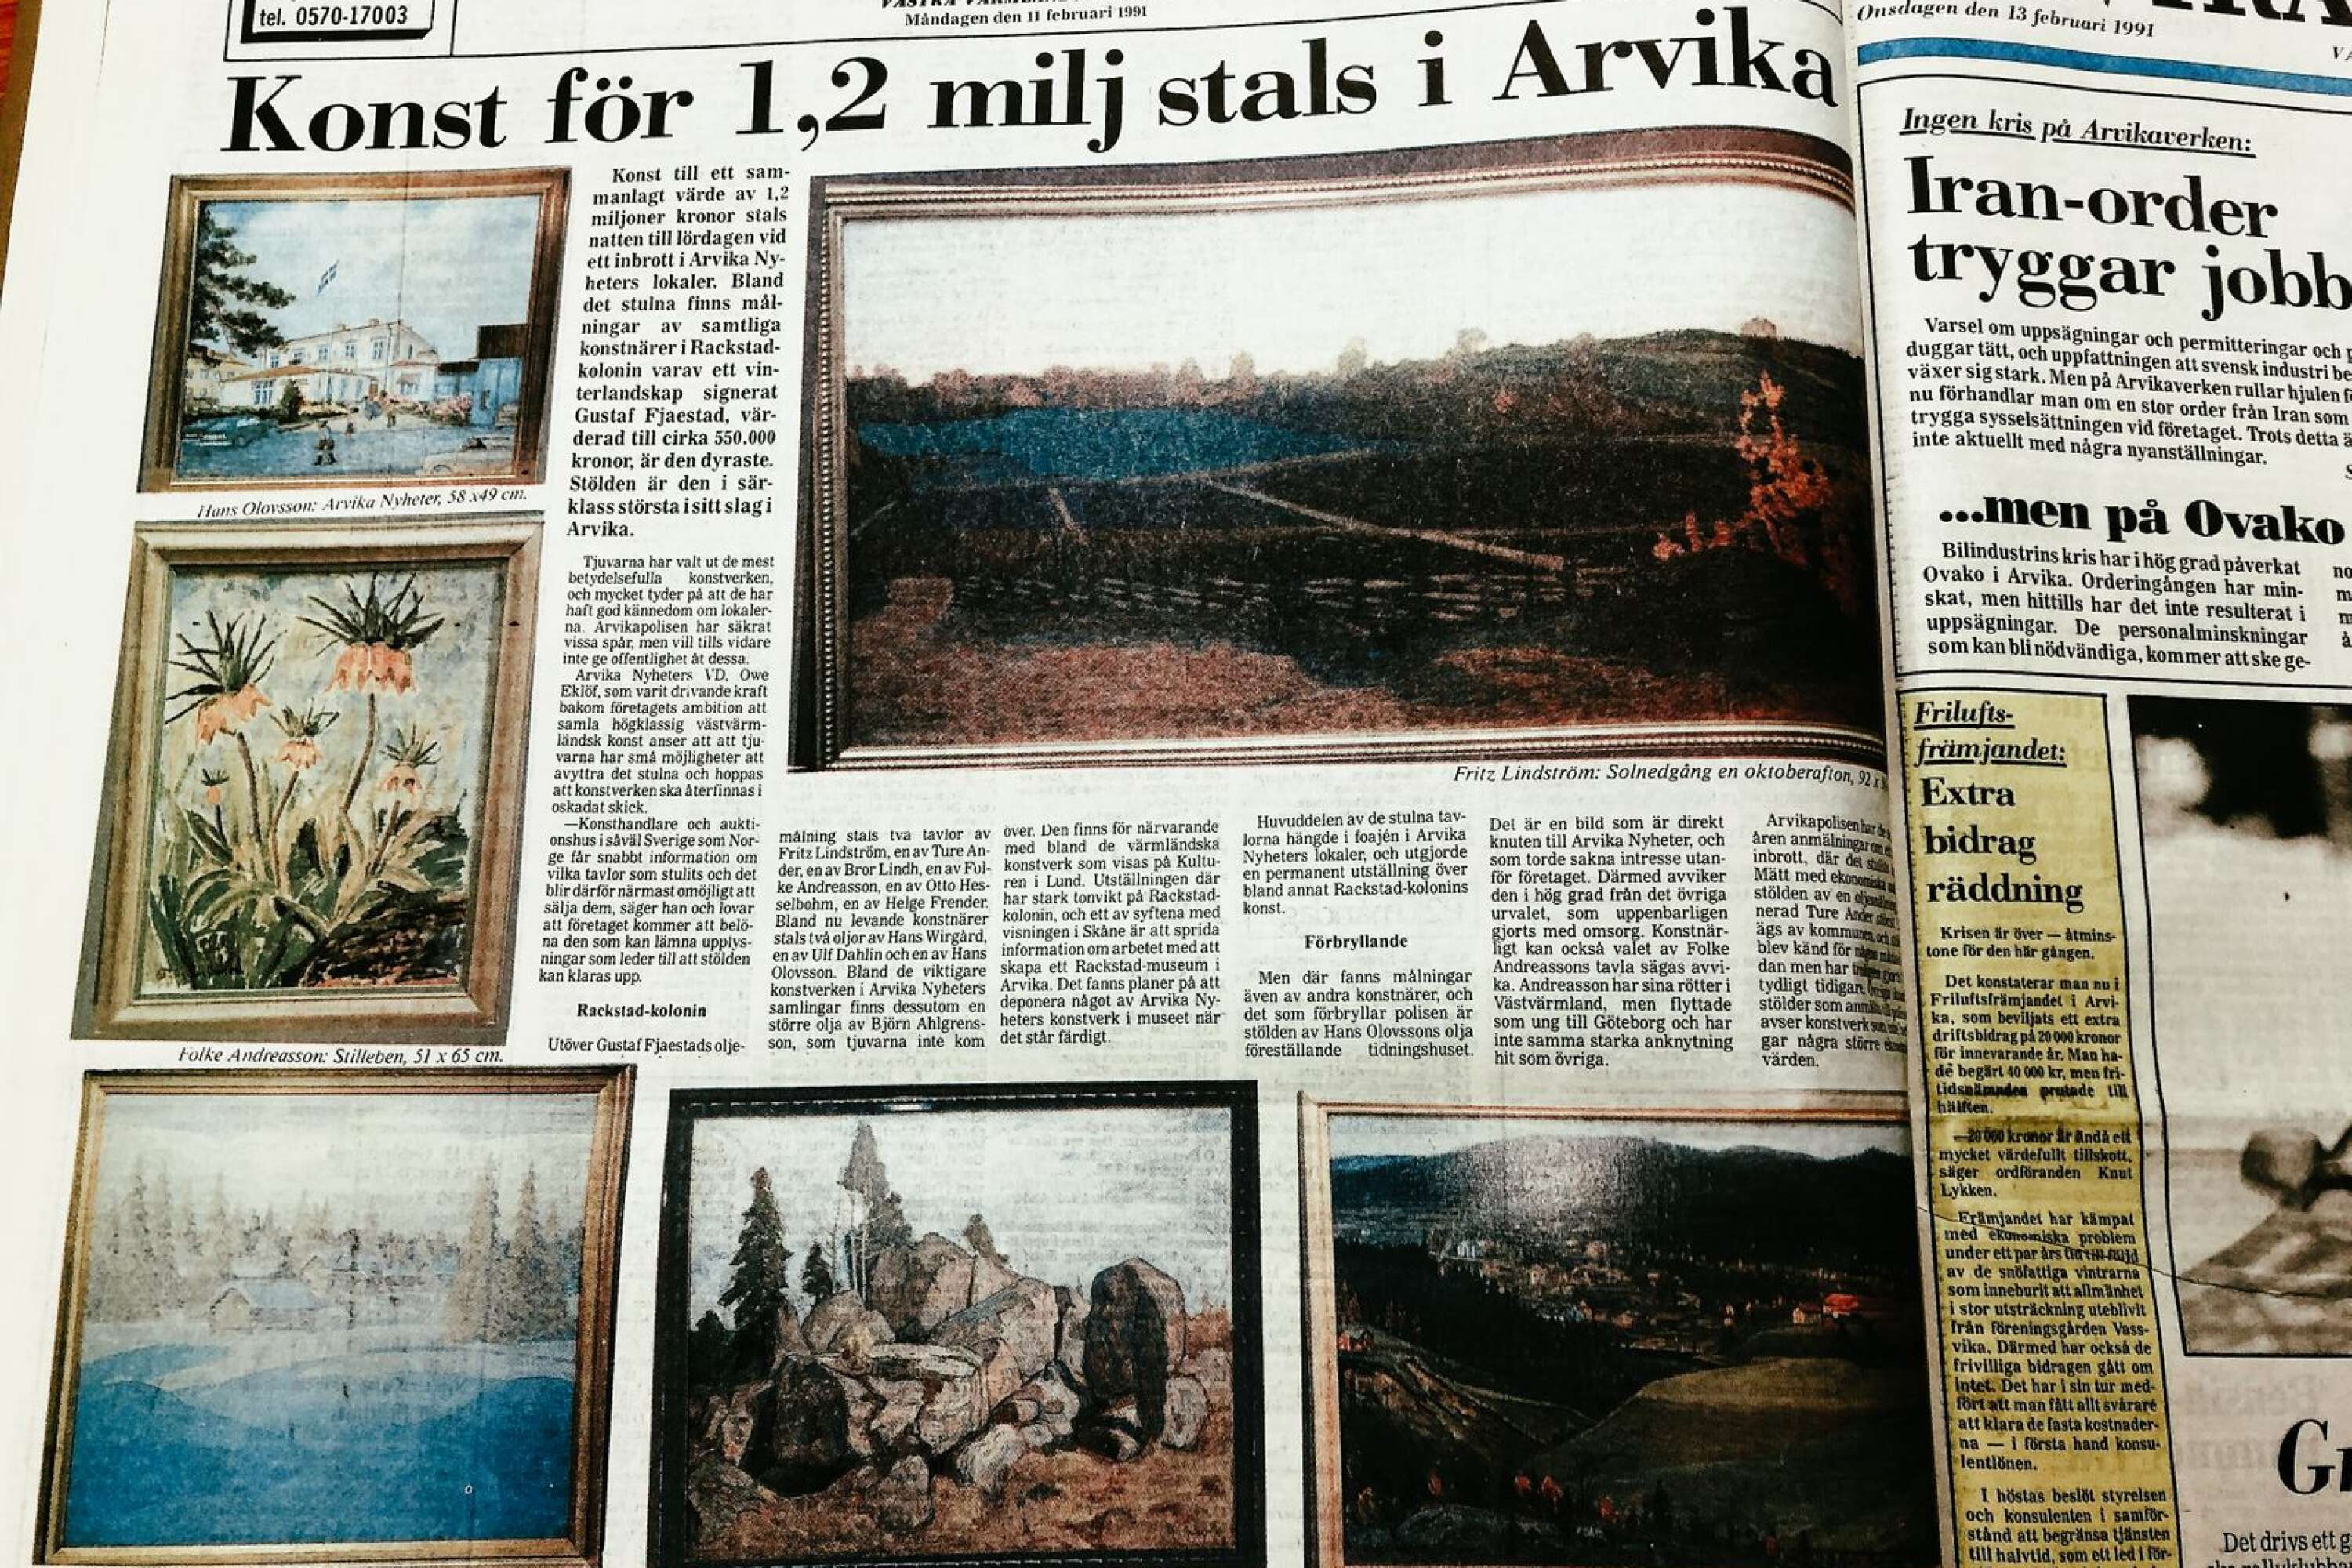 ”All konst var väl registrerad så den måste ha varit fruktansvärt svårsåld”, säger Staffan Ander. Bild på ett nummer av AN från den 11 februari 1991. 